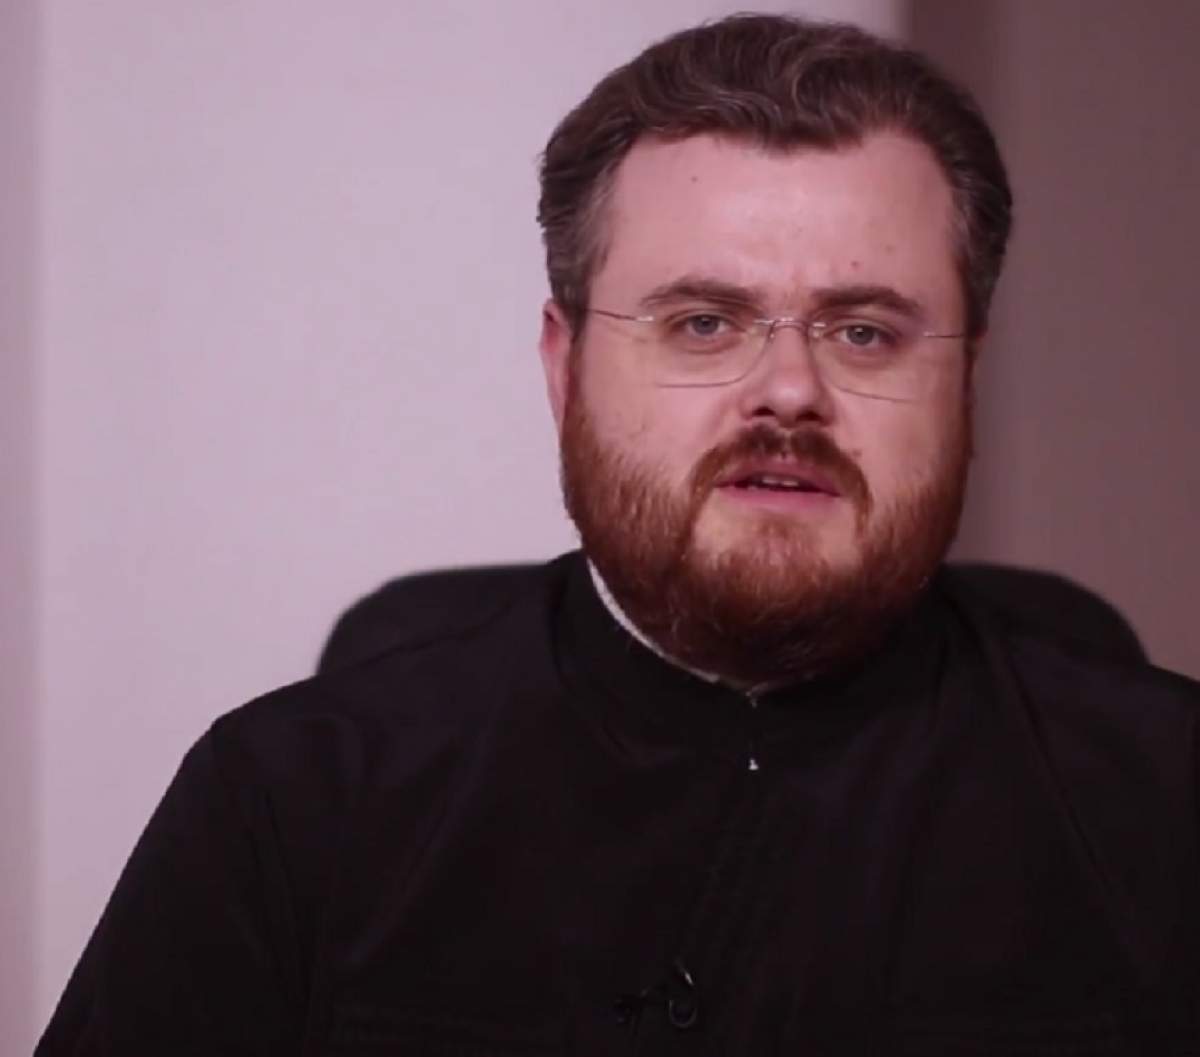 Părintele Ionuț Mavrichi, despre adevărata semnificație a Postului Paștelui: „Este de mai multe feluri”